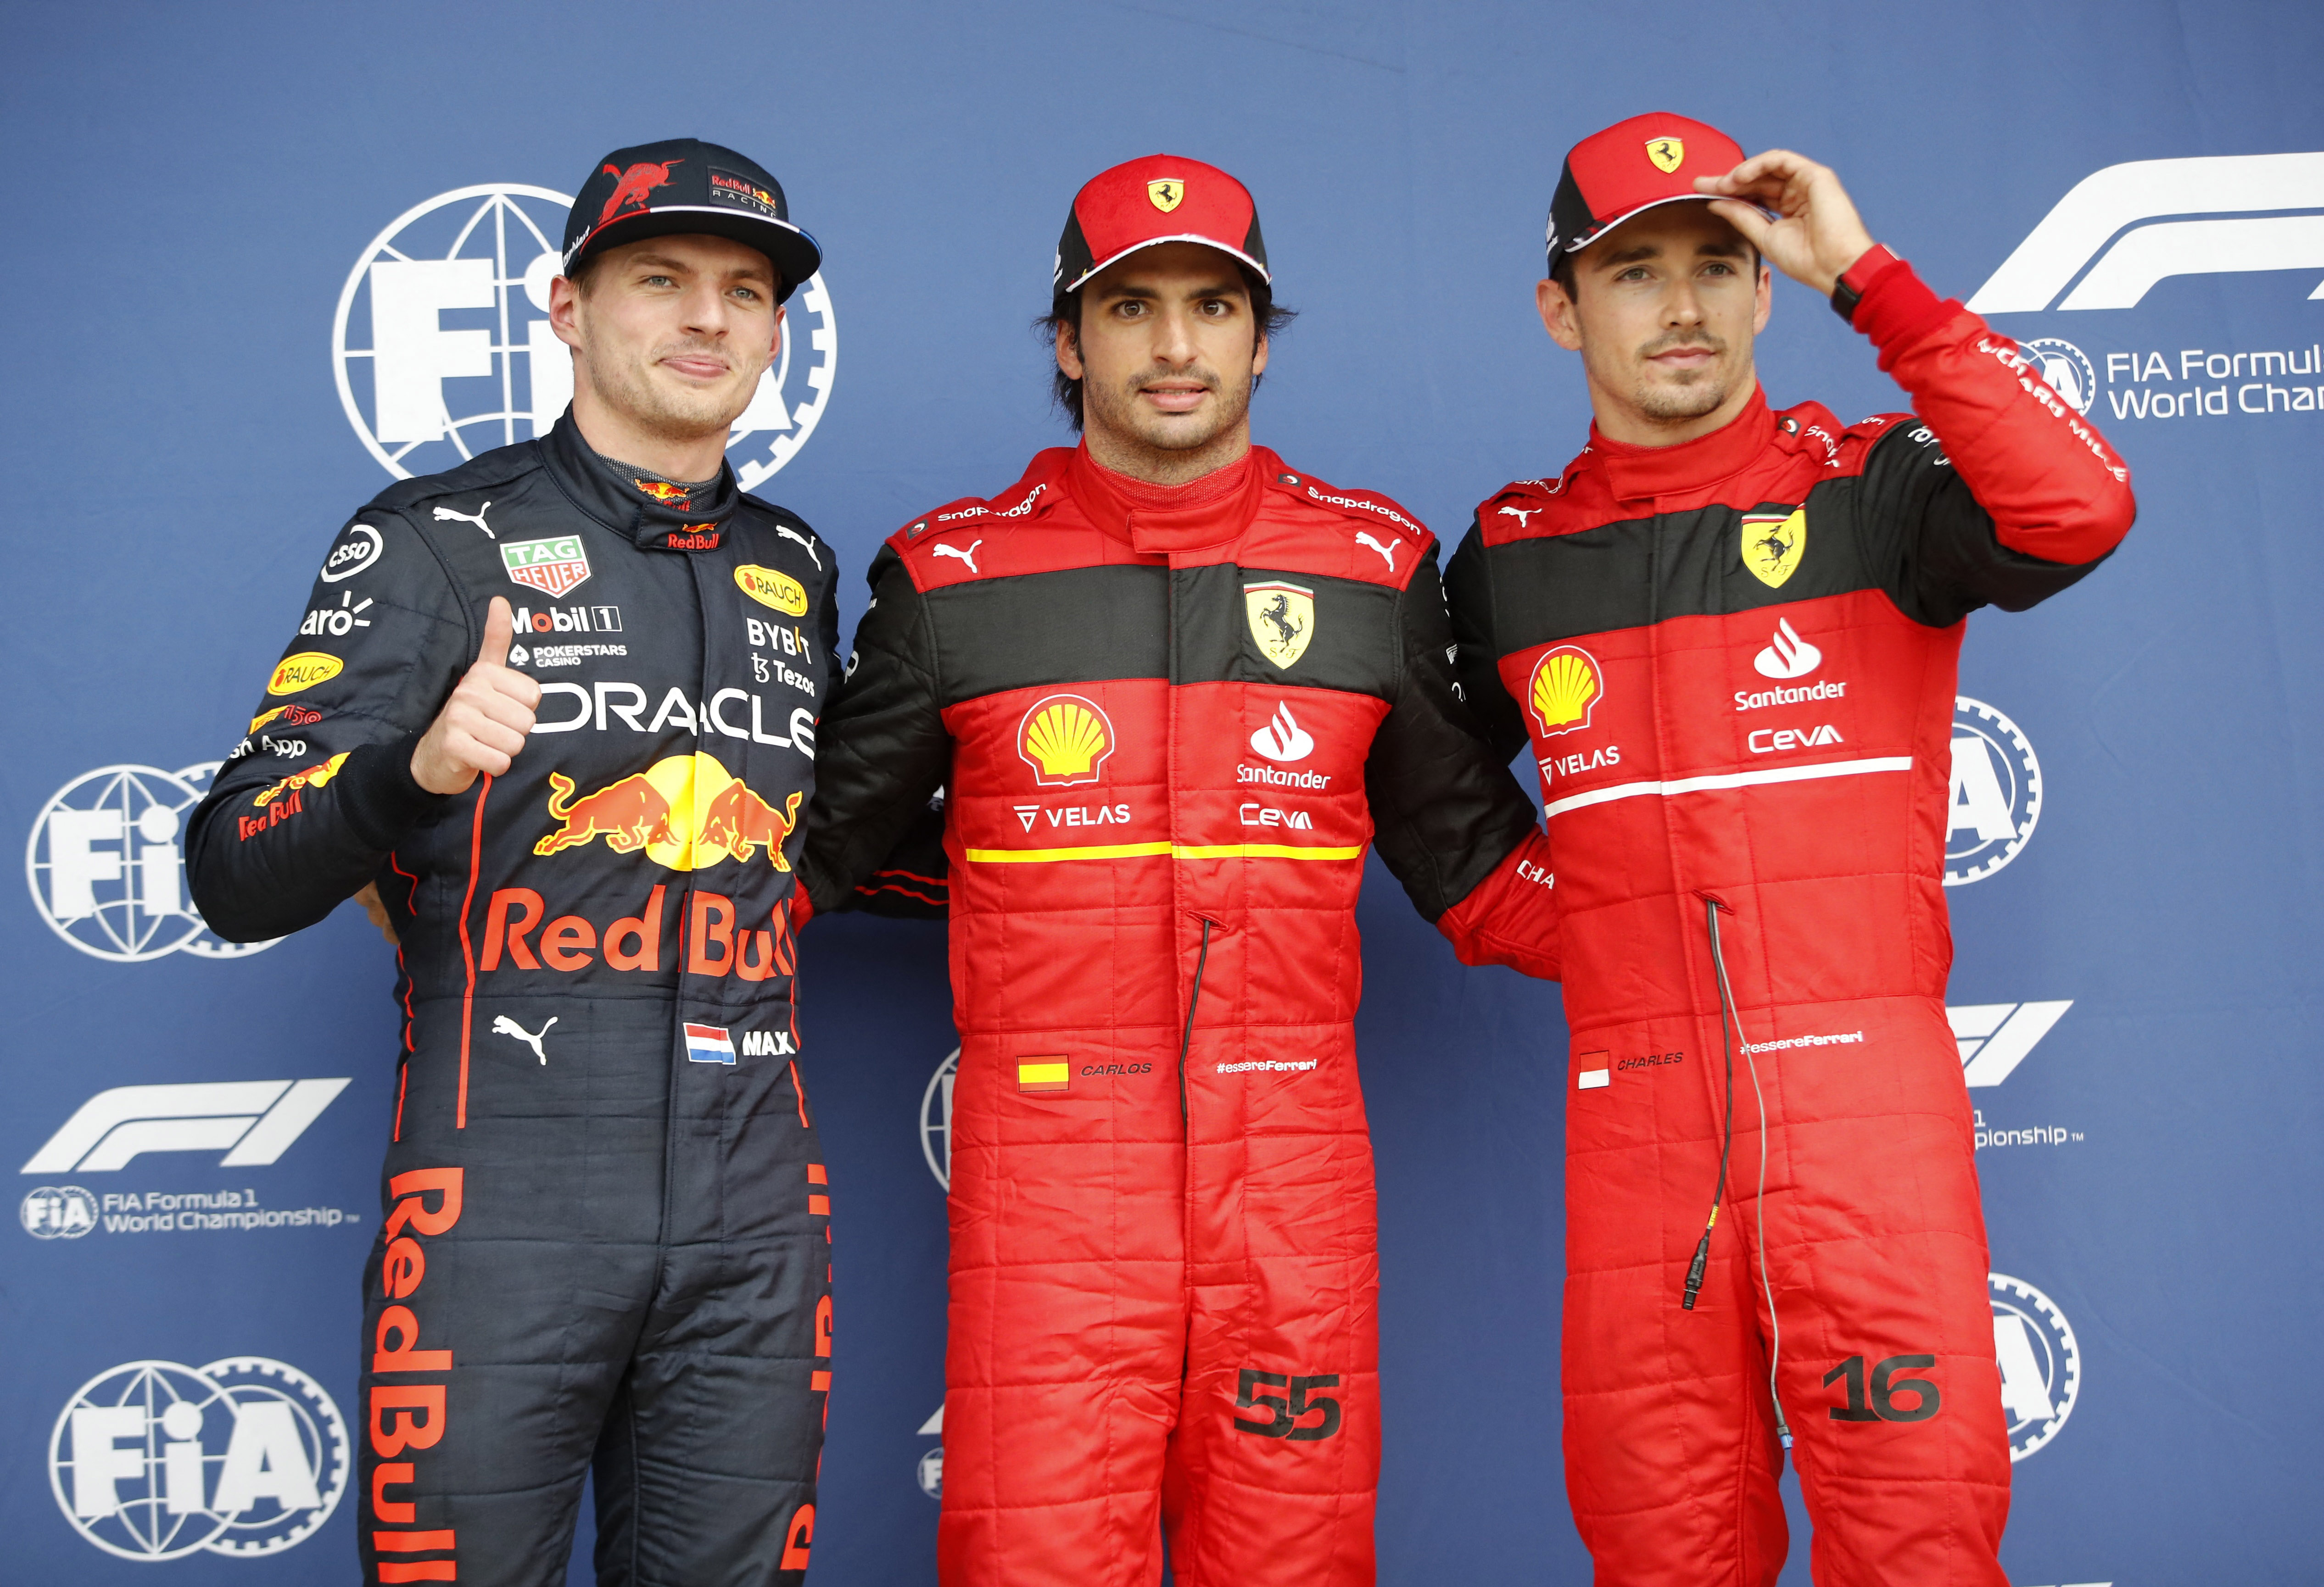 Carlos Sainz Jr, Max Verstappen y Charles Lecler en los primeros tres puestos para la carrera del GP de Gran Bretaña. Foto: REUTERS/Molly Darlington